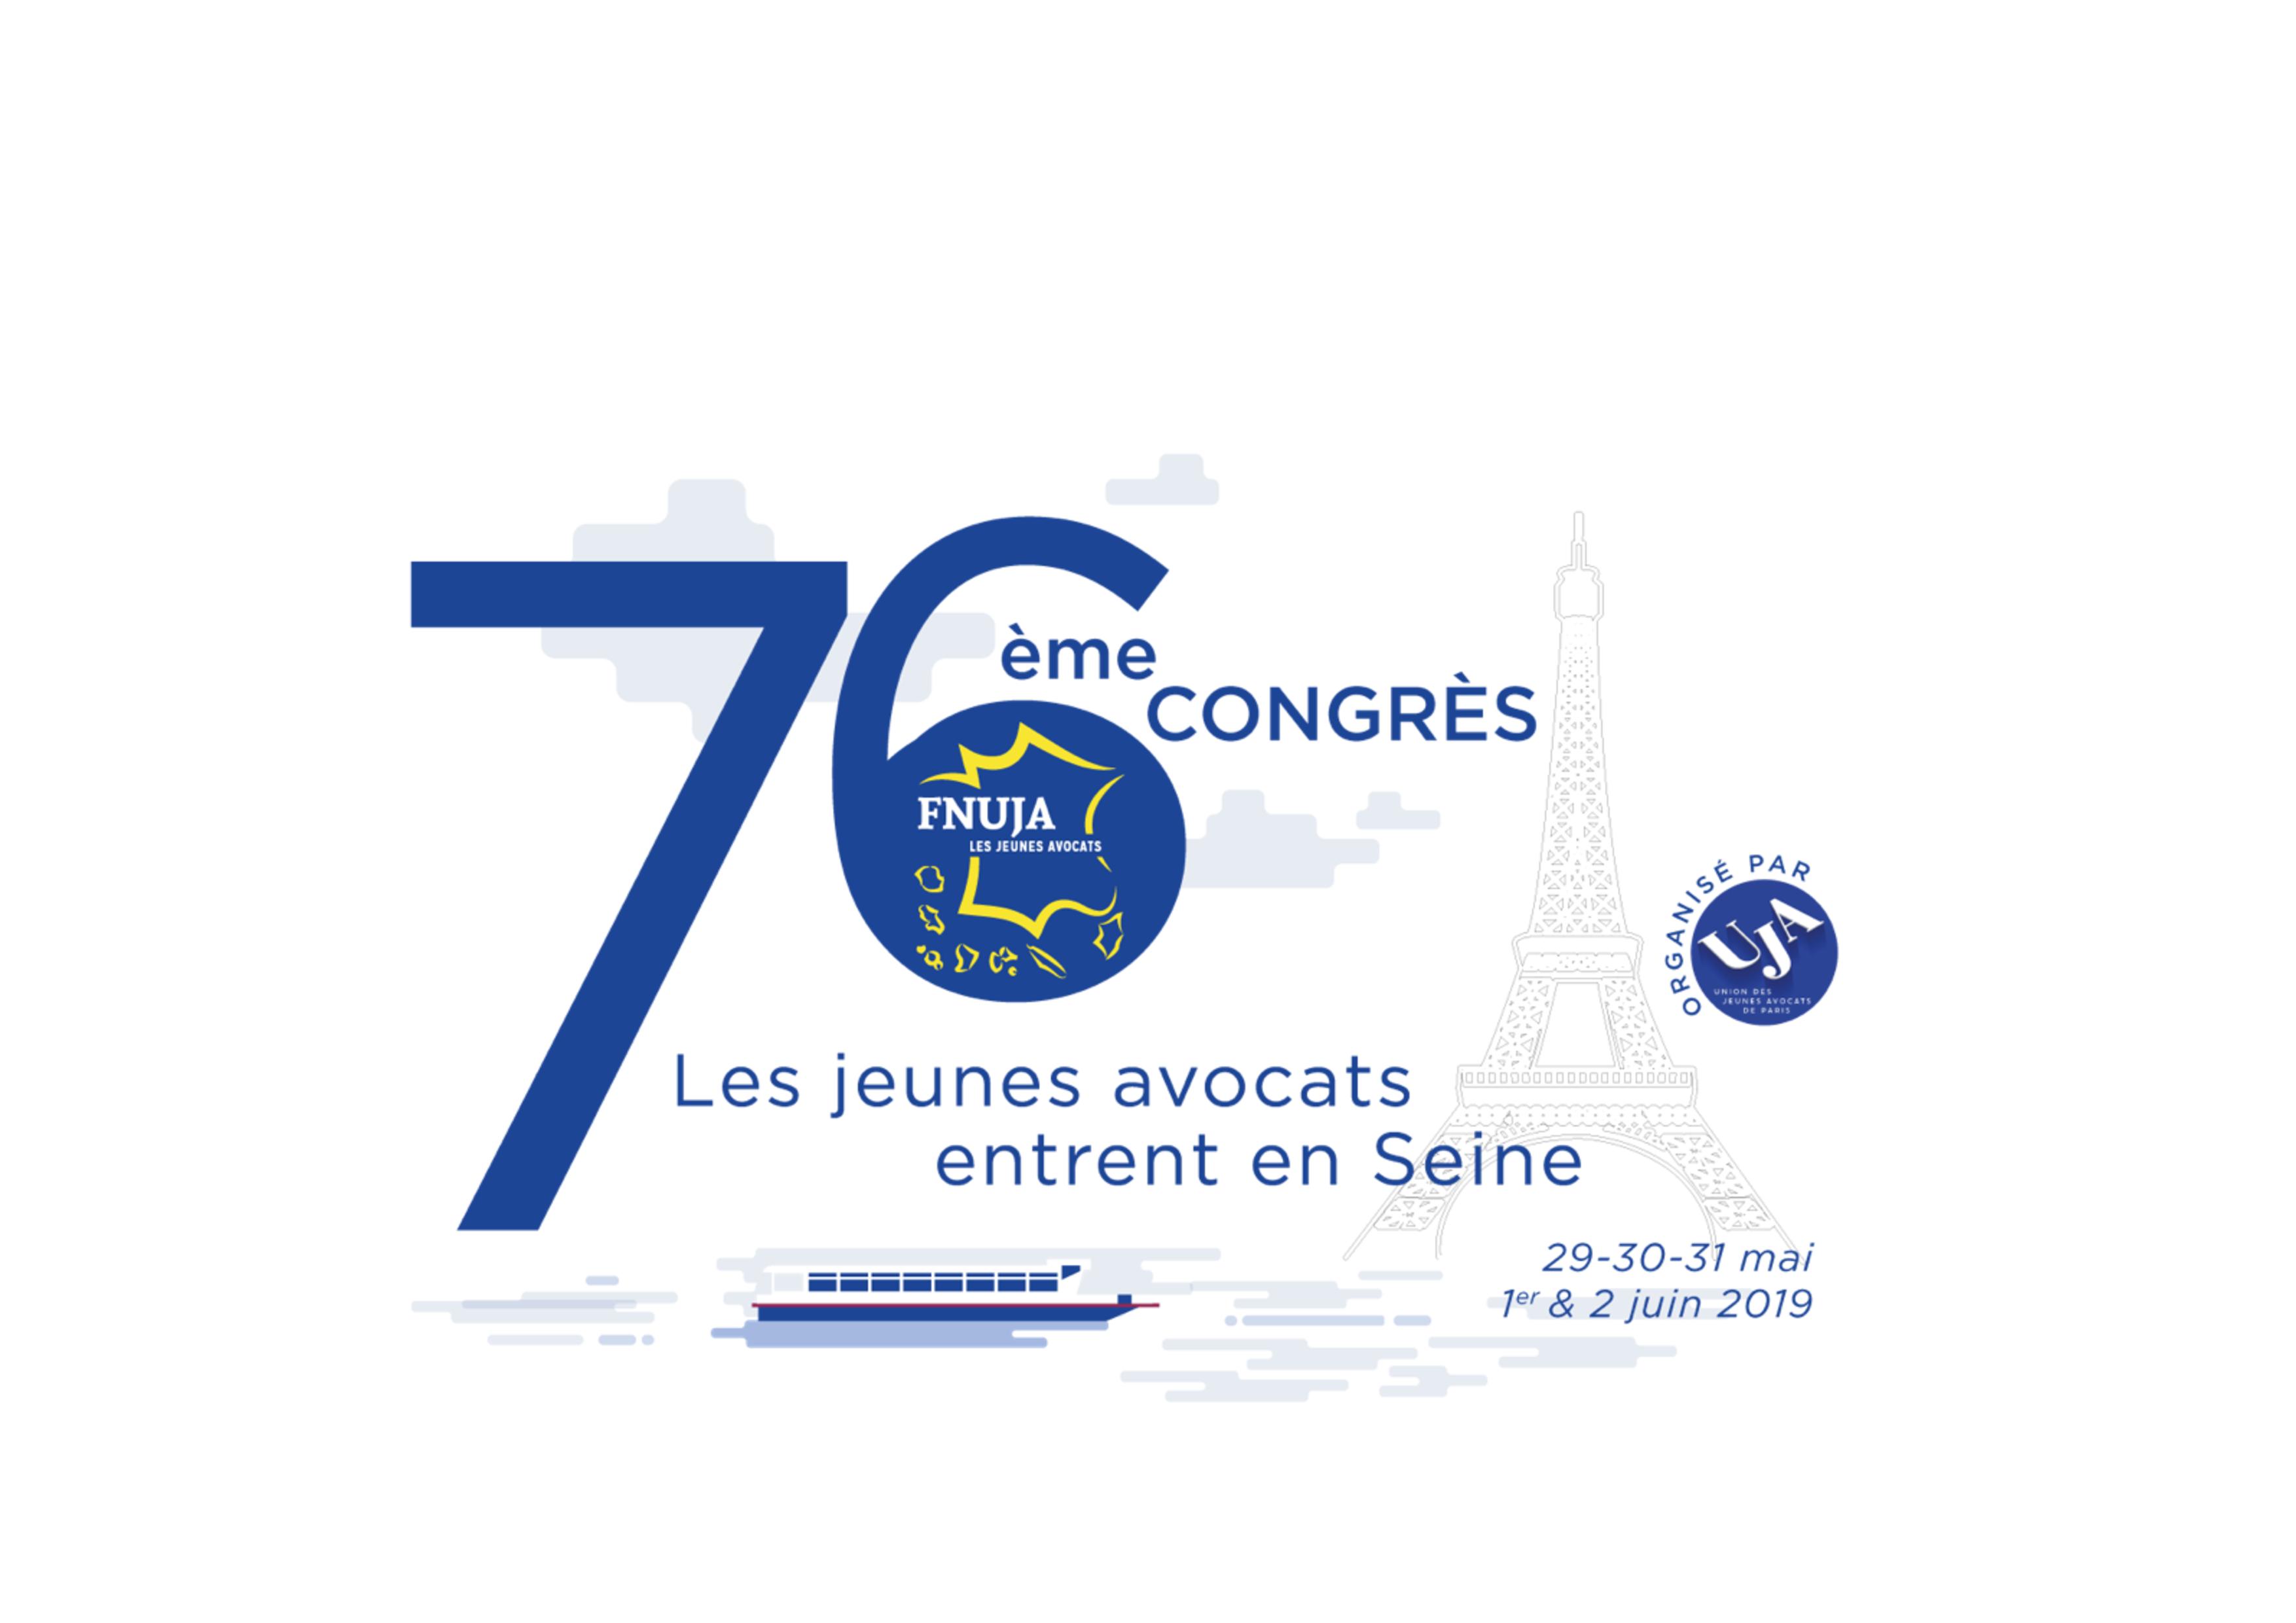 Congrès de Paris 2019 - Les jeunes avocats entrent en Seine!" - LES MOTIONS